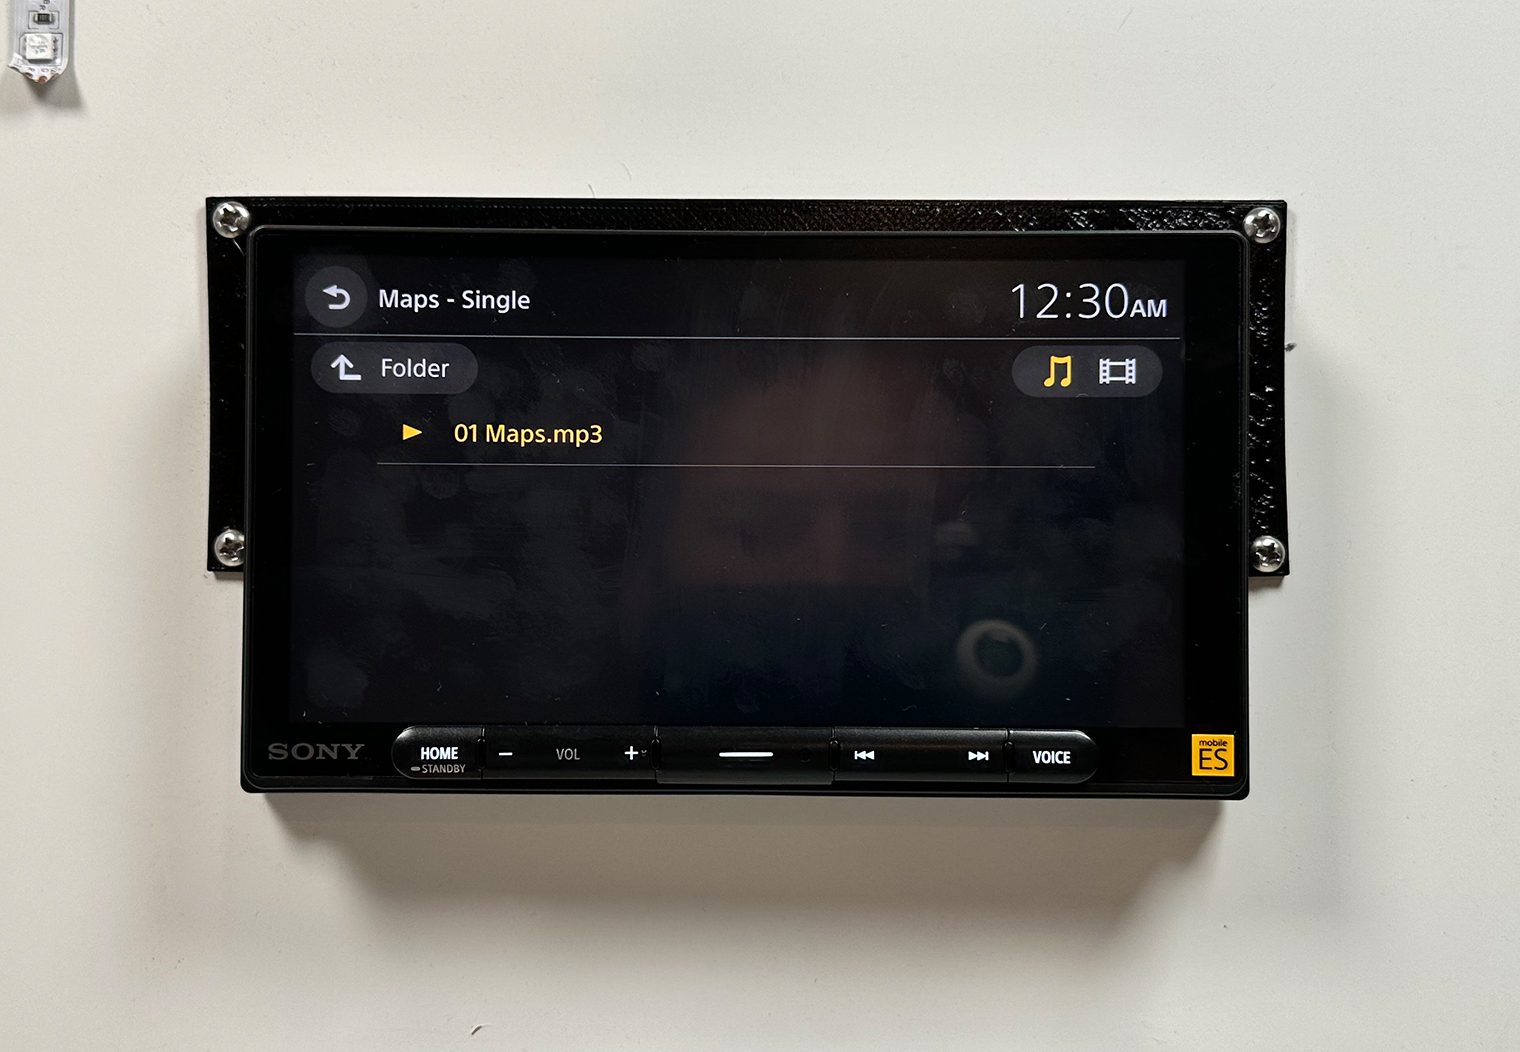 Sony XAV-9000ES usb folder navigating